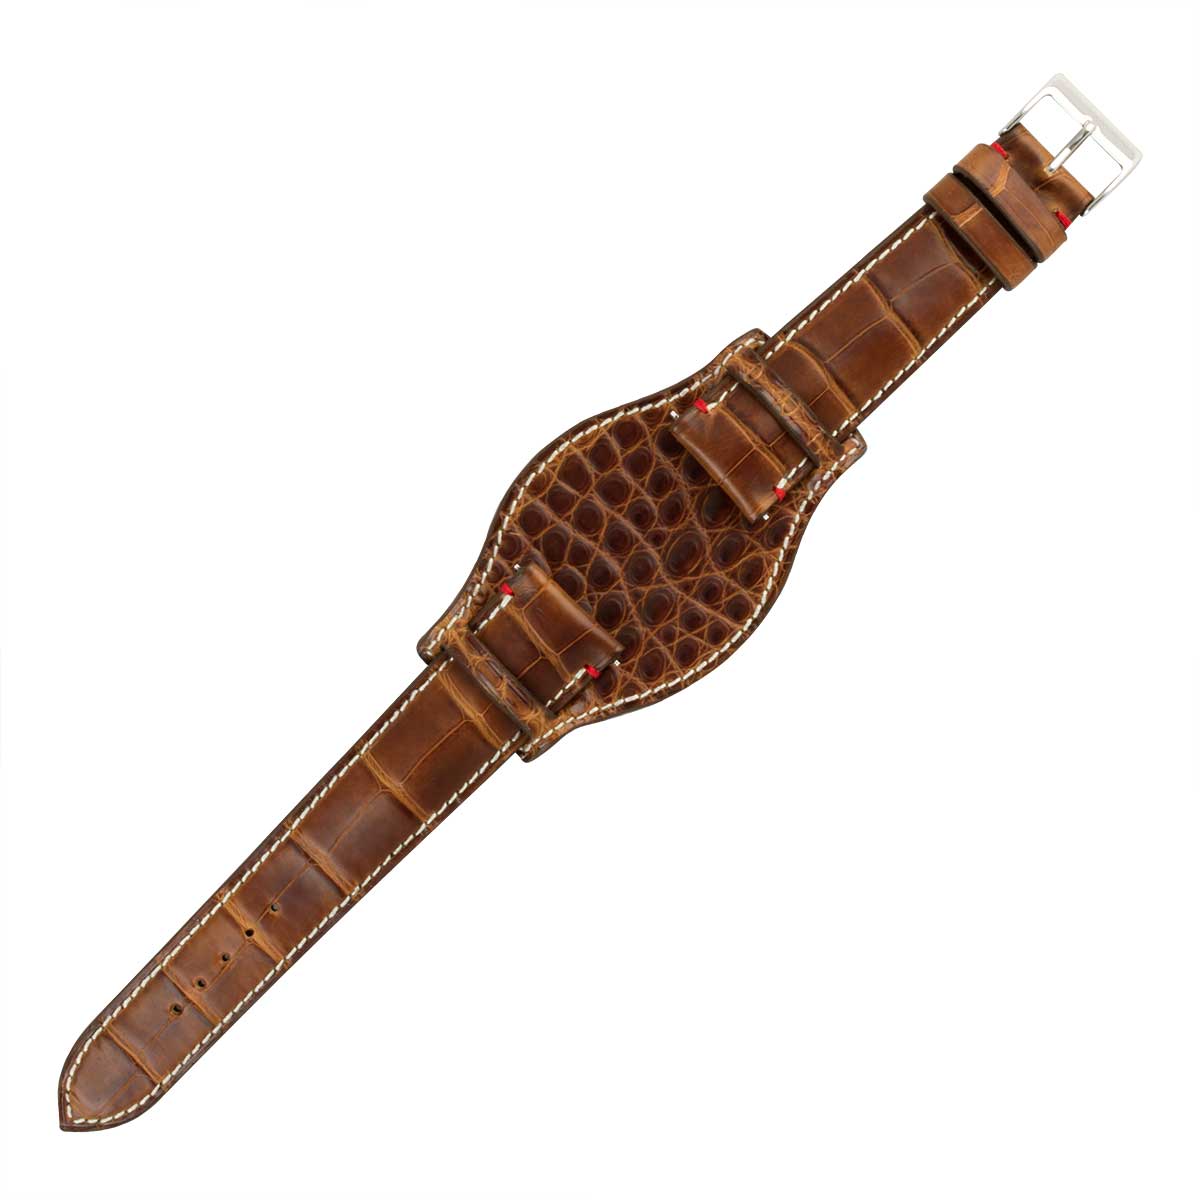 Bracelet Bund ABP Concept X Hanhart 1882 pour 417ES - Bracelet-montre cuir - Alligator